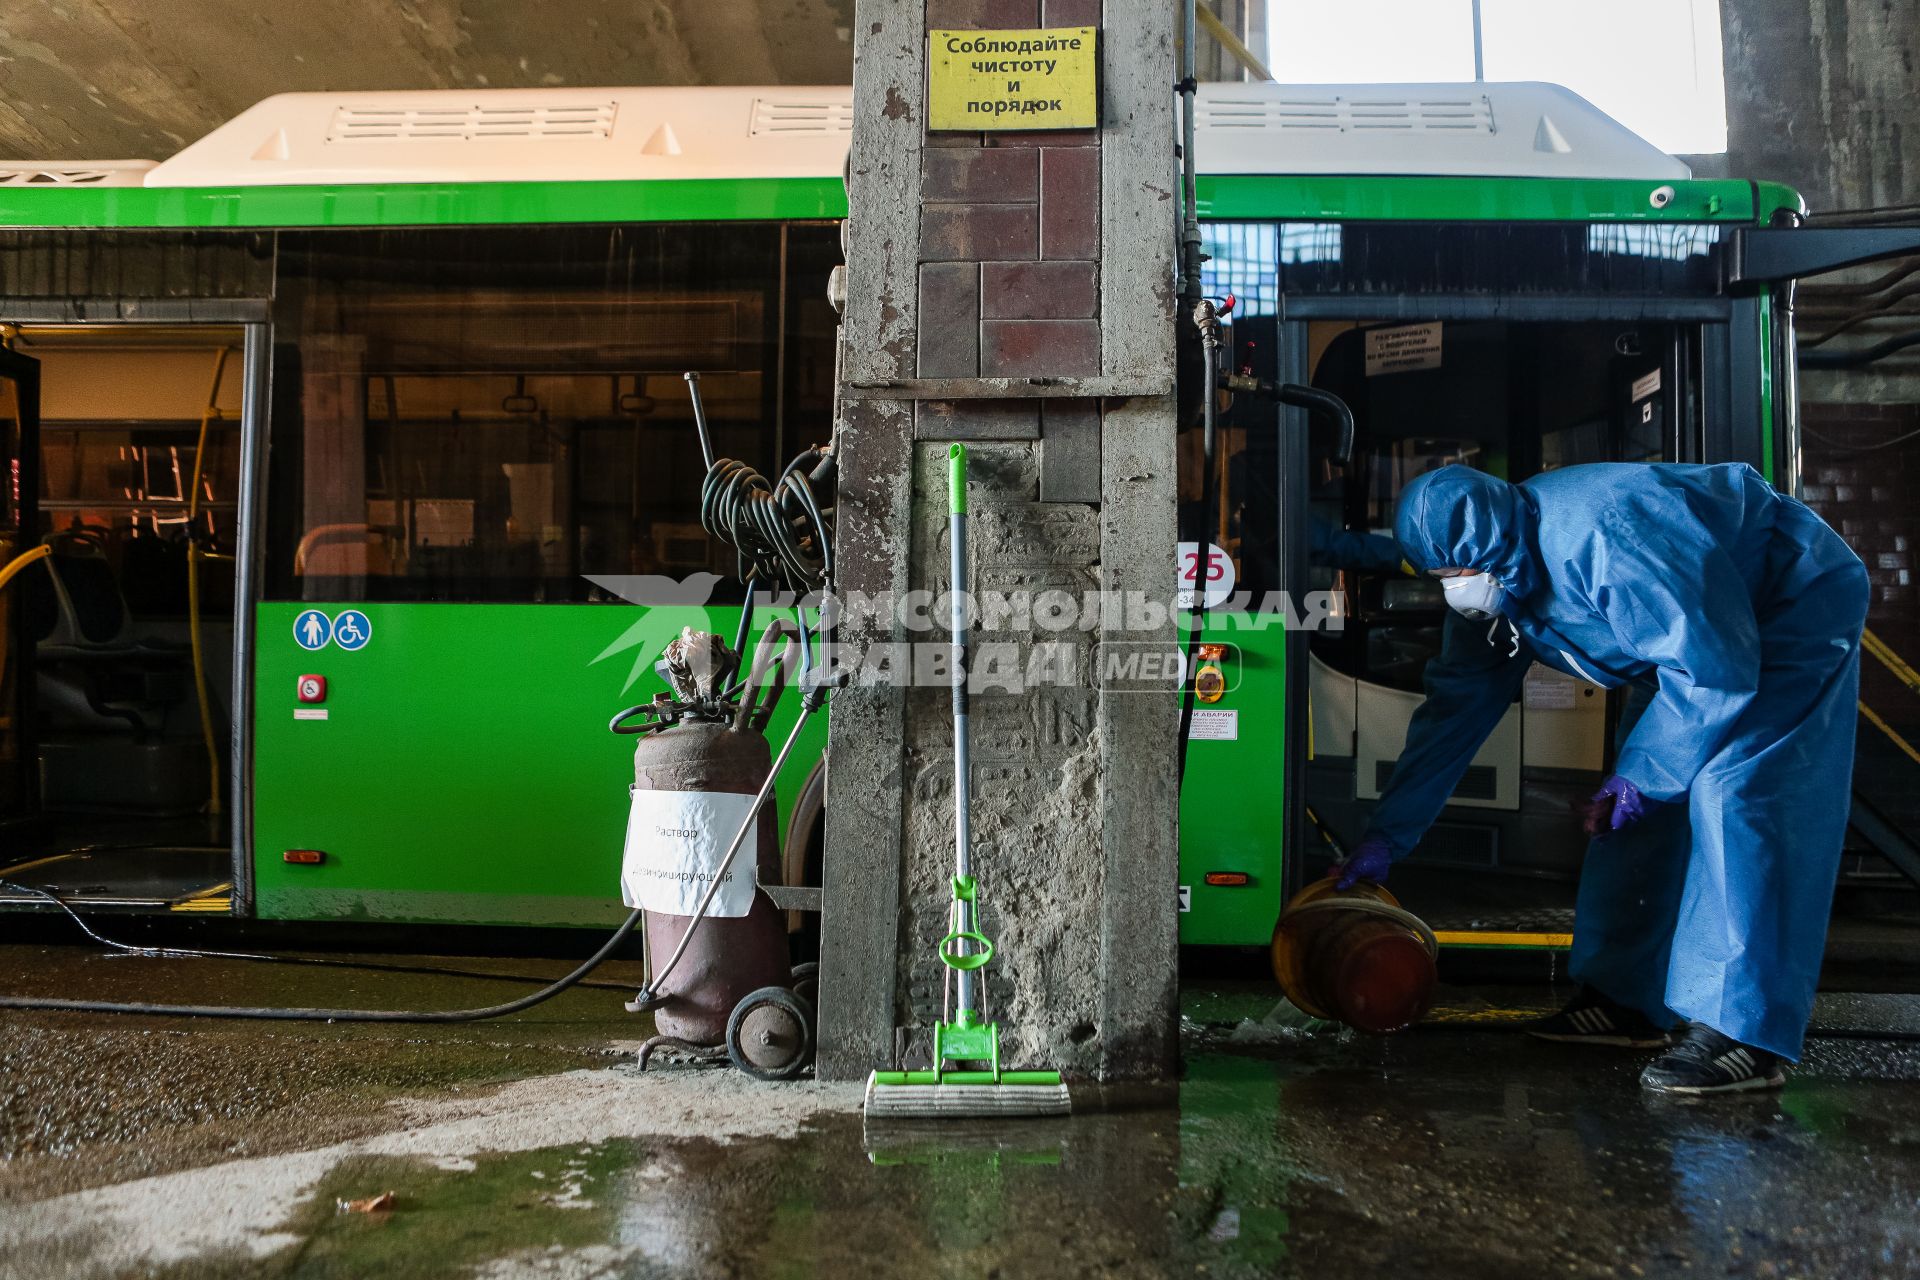 Челябинск. Сотрудница санитарной службы производит дезинфекцию автобуса.